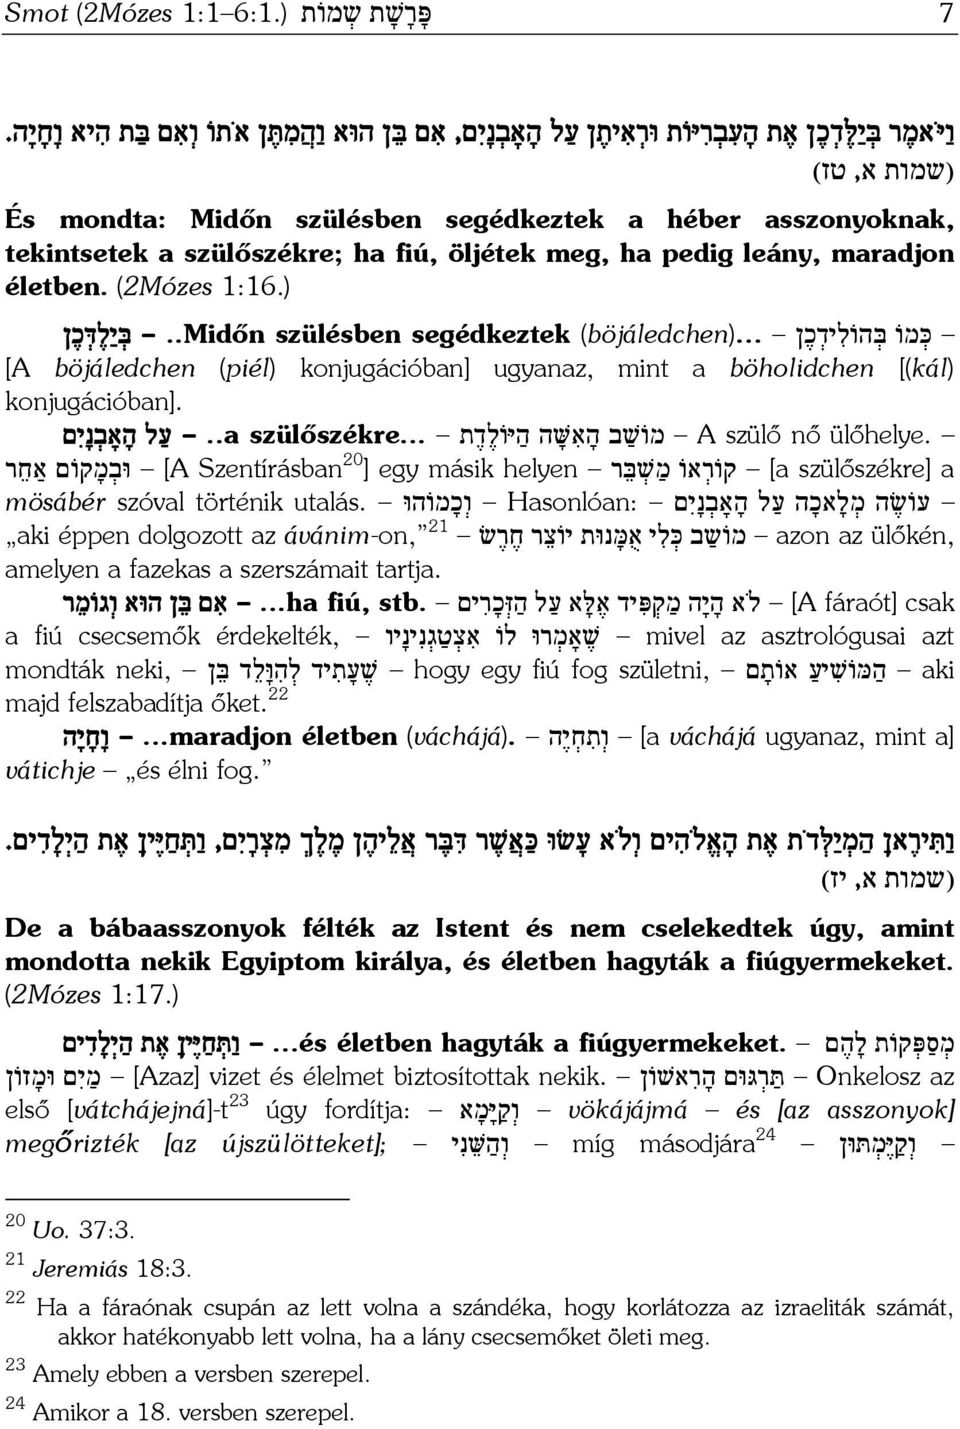 ) כּ מוֹ בּ הוֹל יד כ ן (böjáledchen).....midőn szülésben segédkeztek בּ י ל דּ כ ן [A böjáledchen (piél) konjugációban] ugyanaz, mint a böholidchen [(kál) konjugációban]. ülőhelye.